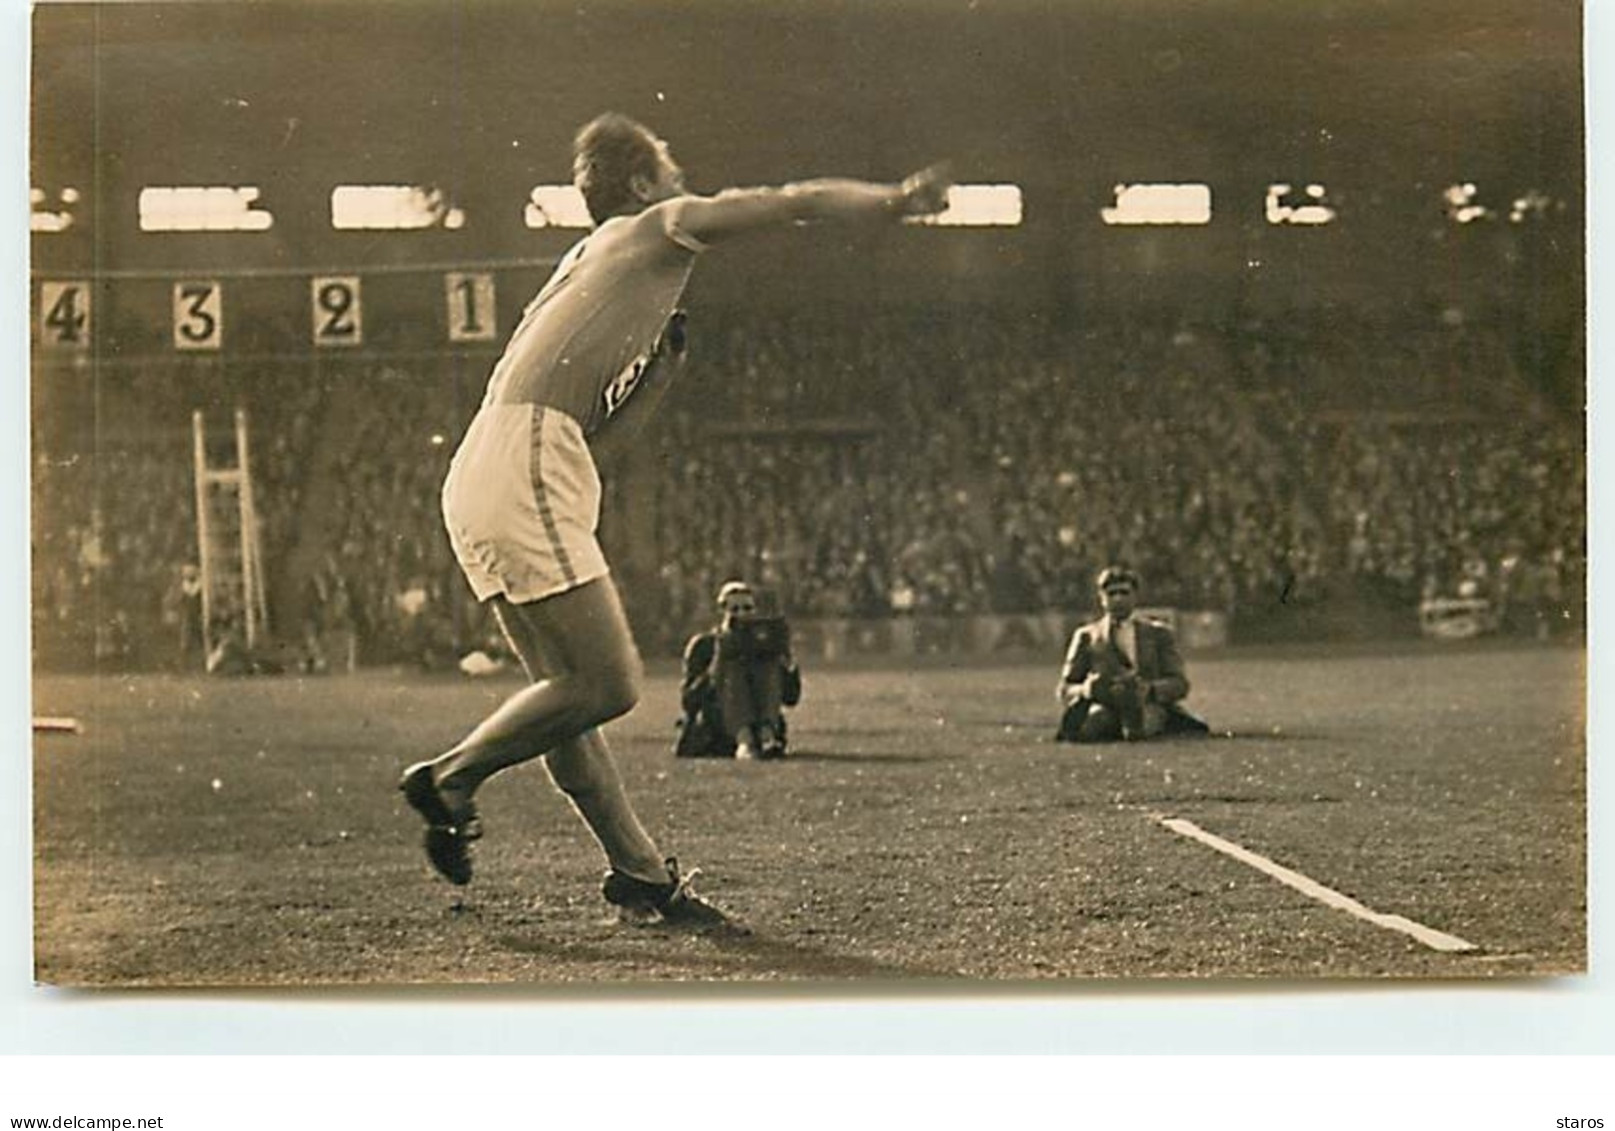 Carte Photo - Match D'athlétisme France-Finlande à Colombes 1929 - Lancé - Finlande - Athletics